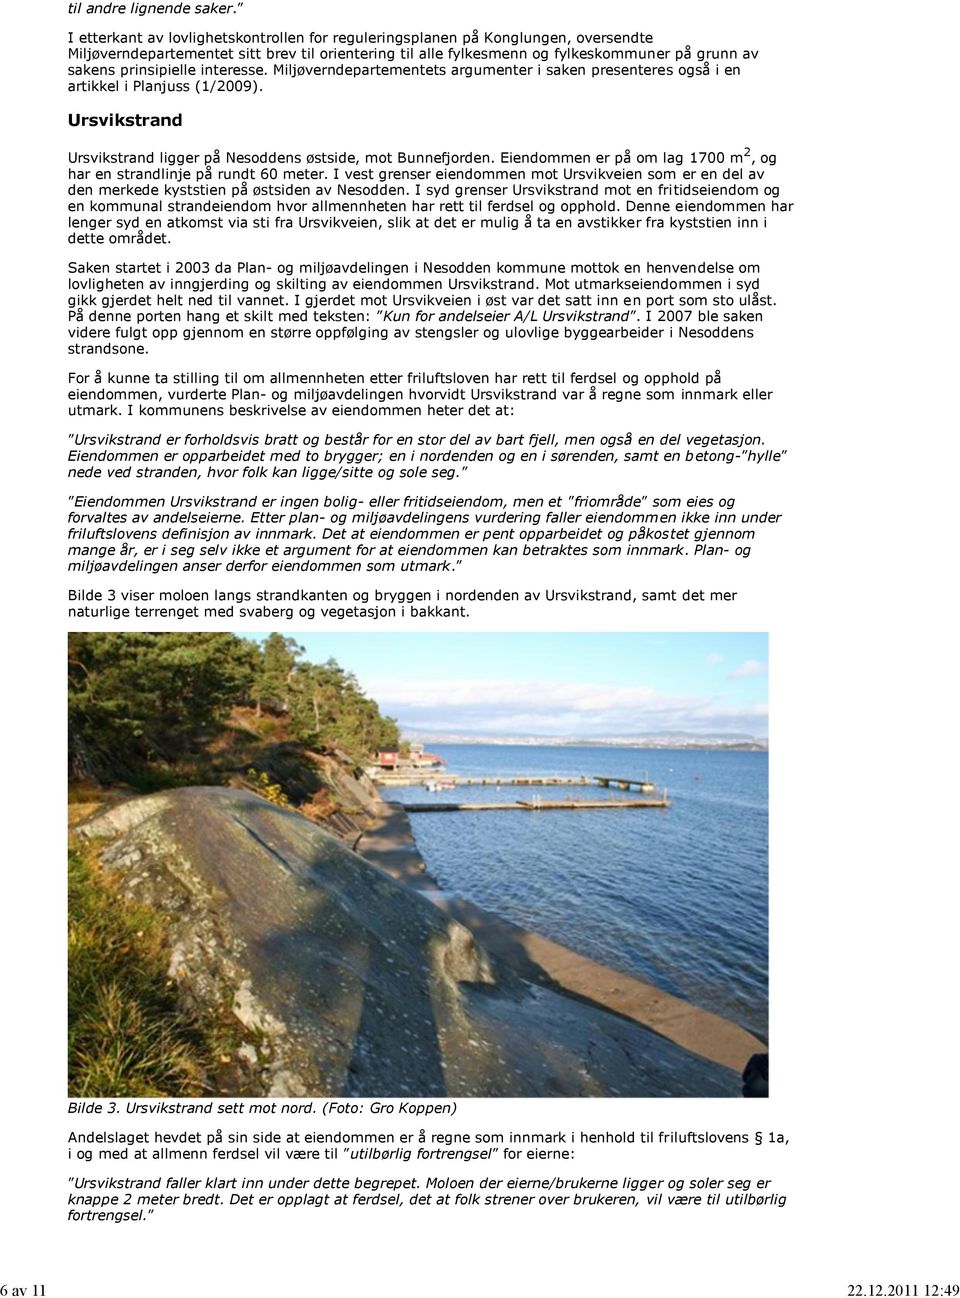 prinsipielle interesse. Miljøverndepartementets argumenter i saken presenteres også i en artikkel i Planjuss (1/2009). Ursvikstrand Ursvikstrand ligger på Nesoddens østside, mot Bunnefjorden.